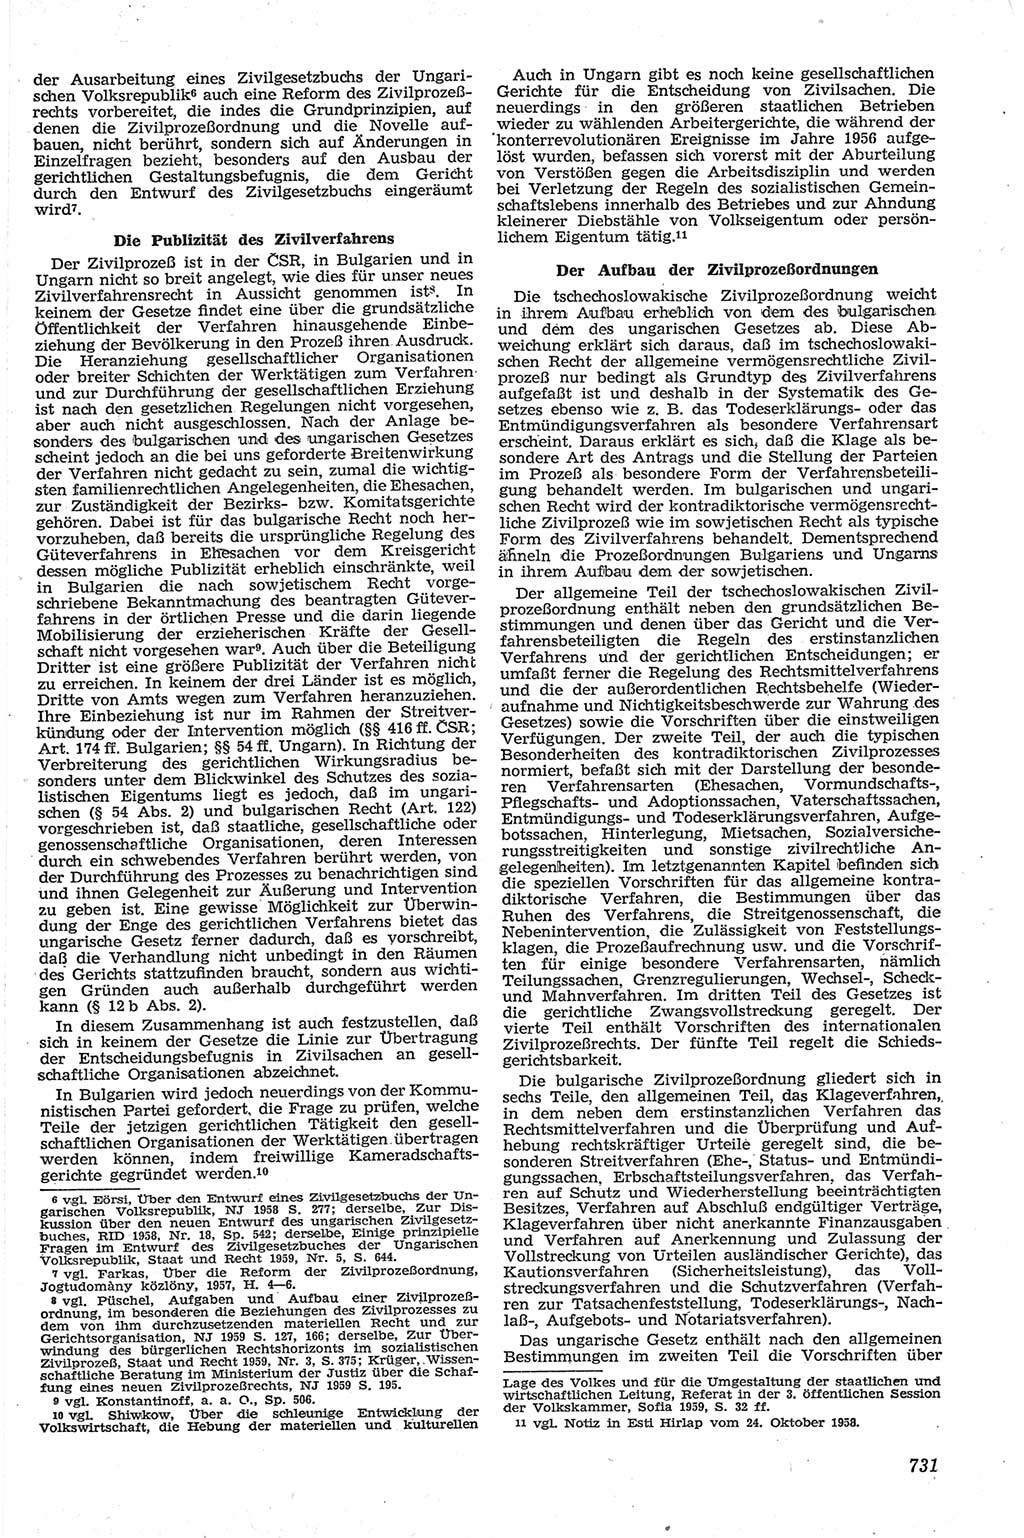 Neue Justiz (NJ), Zeitschrift für Recht und Rechtswissenschaft [Deutsche Demokratische Republik (DDR)], 13. Jahrgang 1959, Seite 731 (NJ DDR 1959, S. 731)